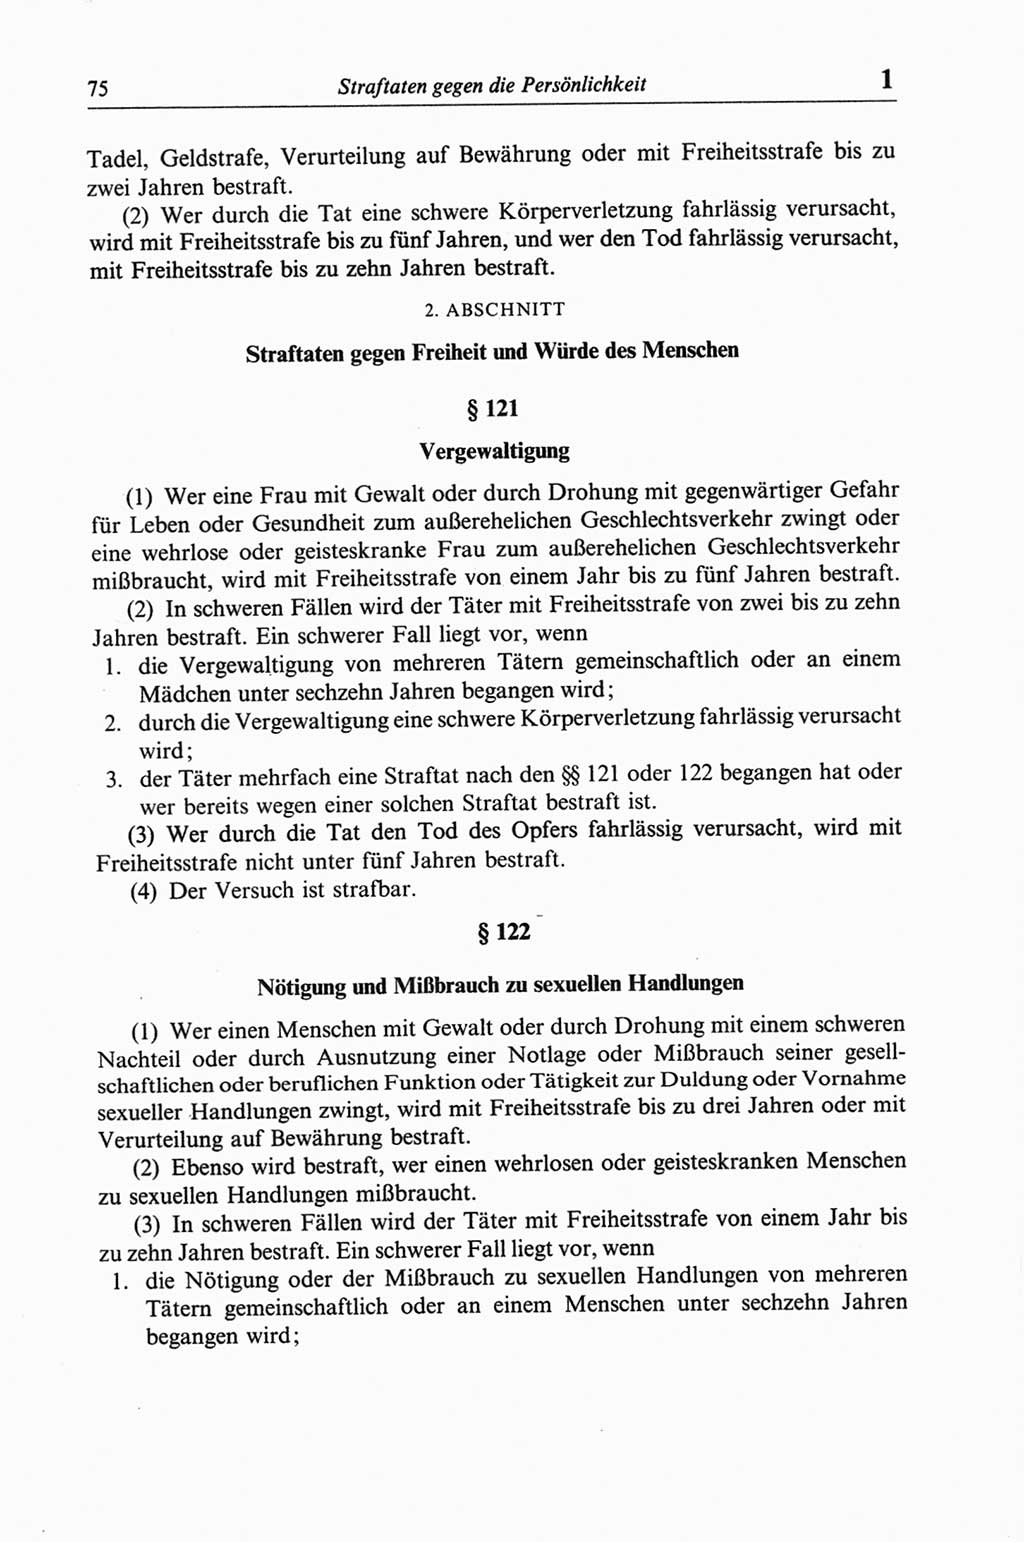 Strafgesetzbuch (StGB) der Deutschen Demokratischen Republik (DDR) und angrenzende Gesetze und Bestimmungen 1968, Seite 75 (StGB Ges. Best. DDR 1968, S. 75)